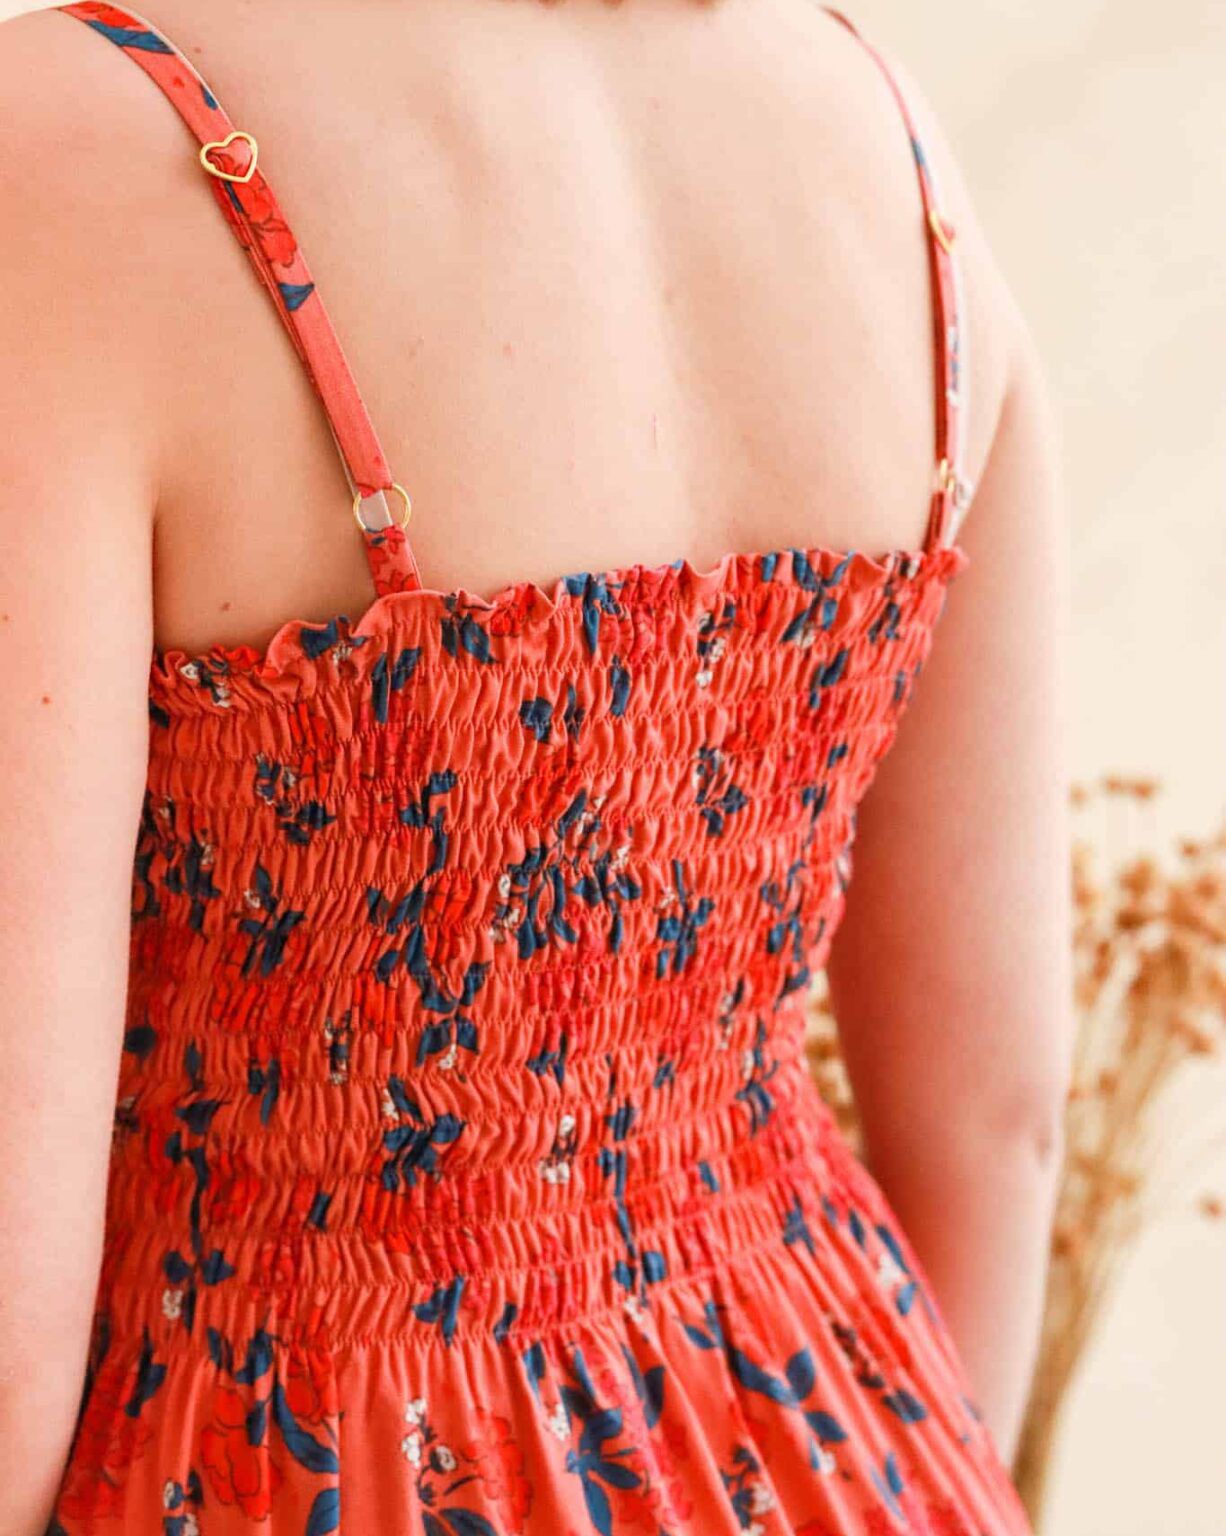 Lise Tailor - Louisiana Viscose Fabric